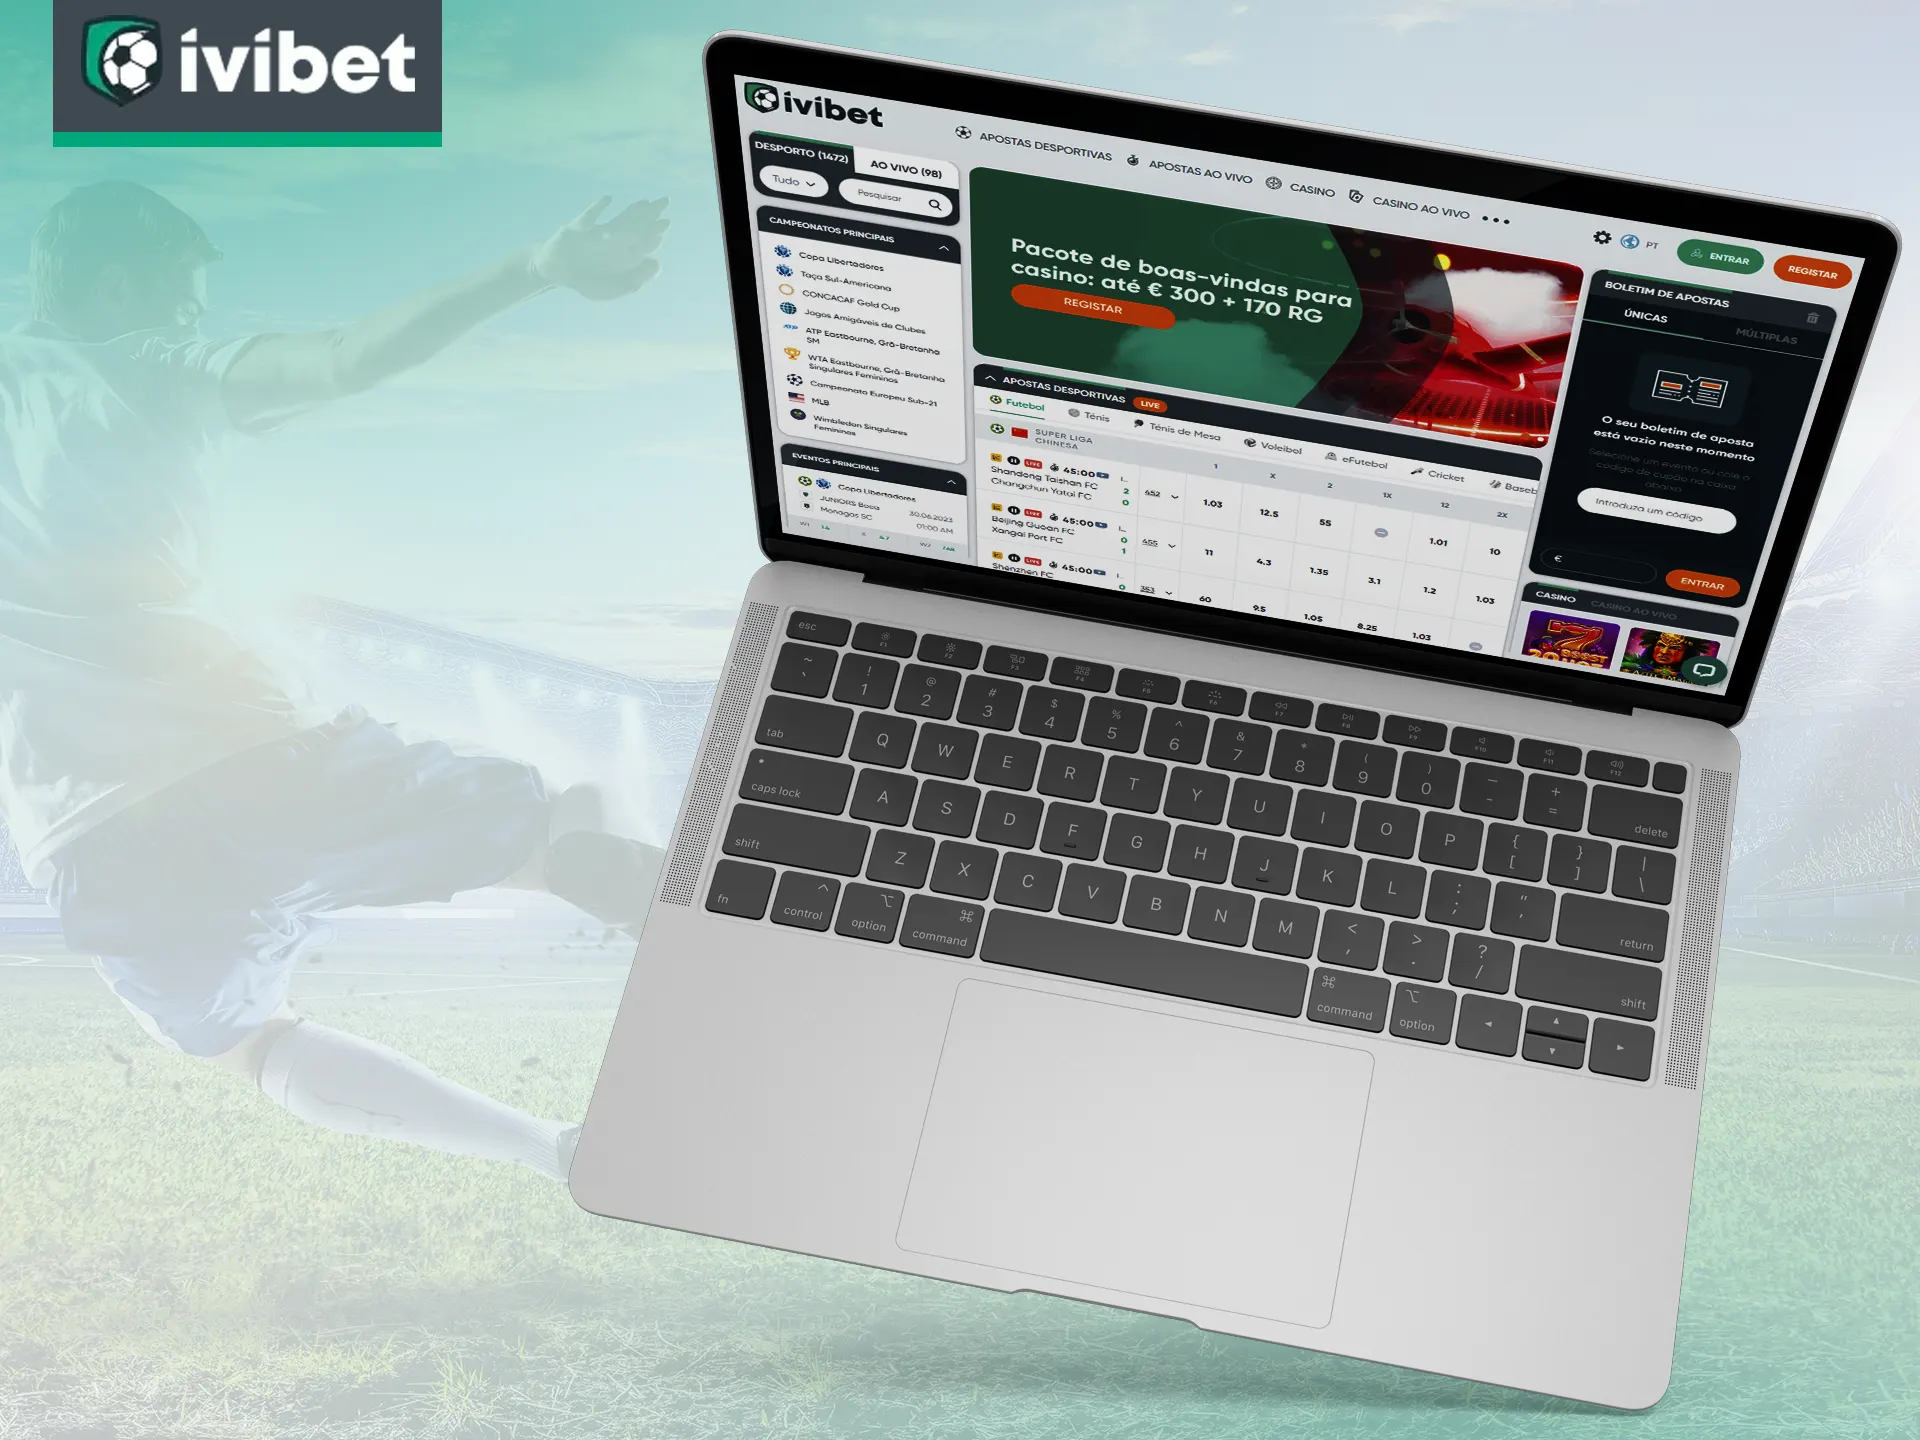 Visite o site oficial da Ivibet para jogar e apostar.